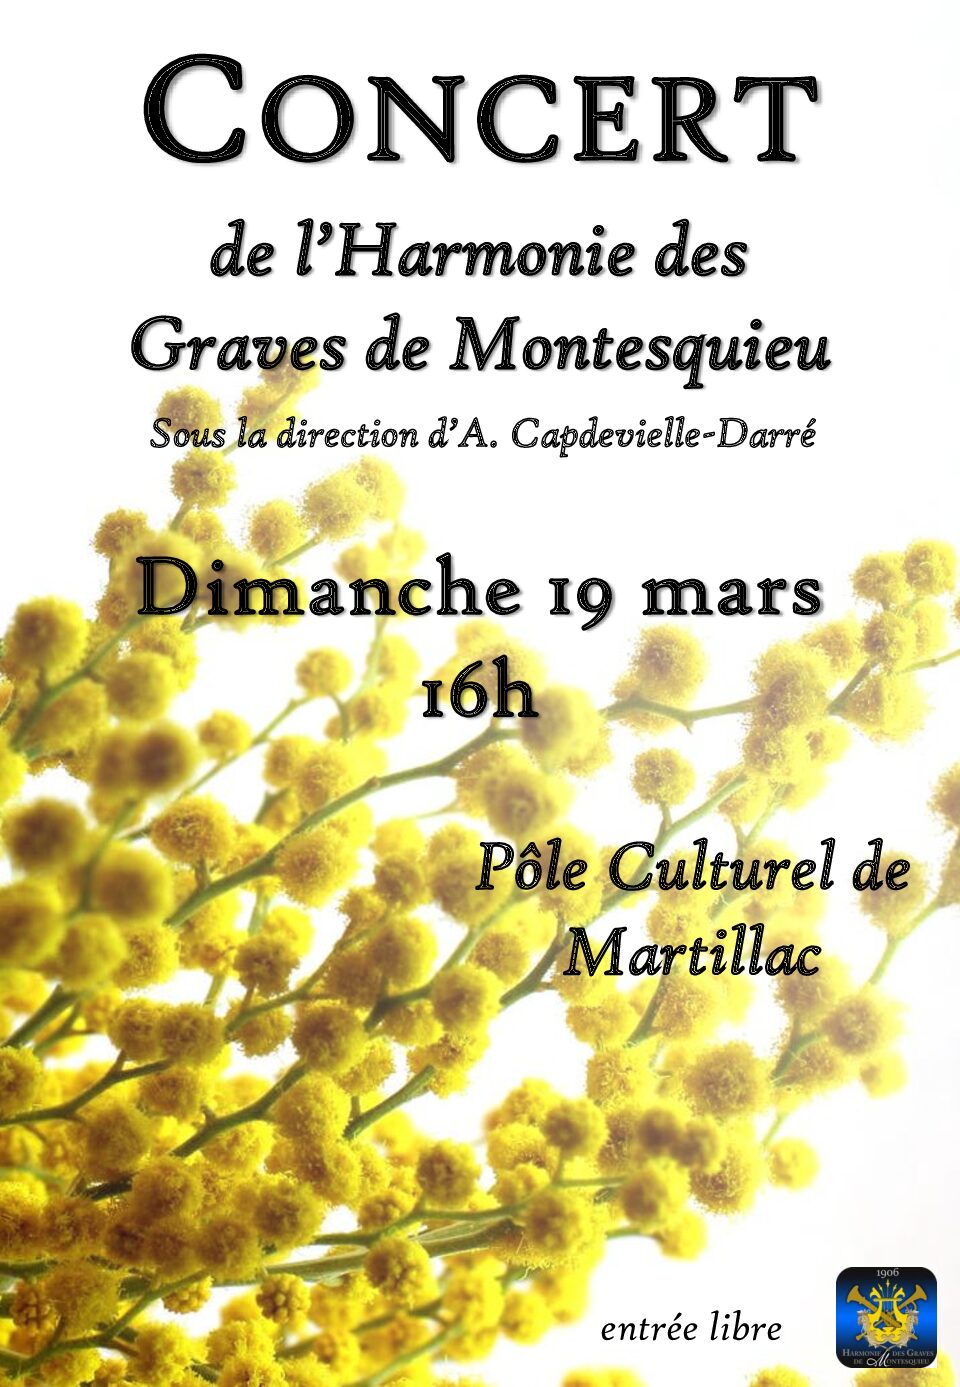 Concert de l'Harmonie des Graves de Montesquieu.